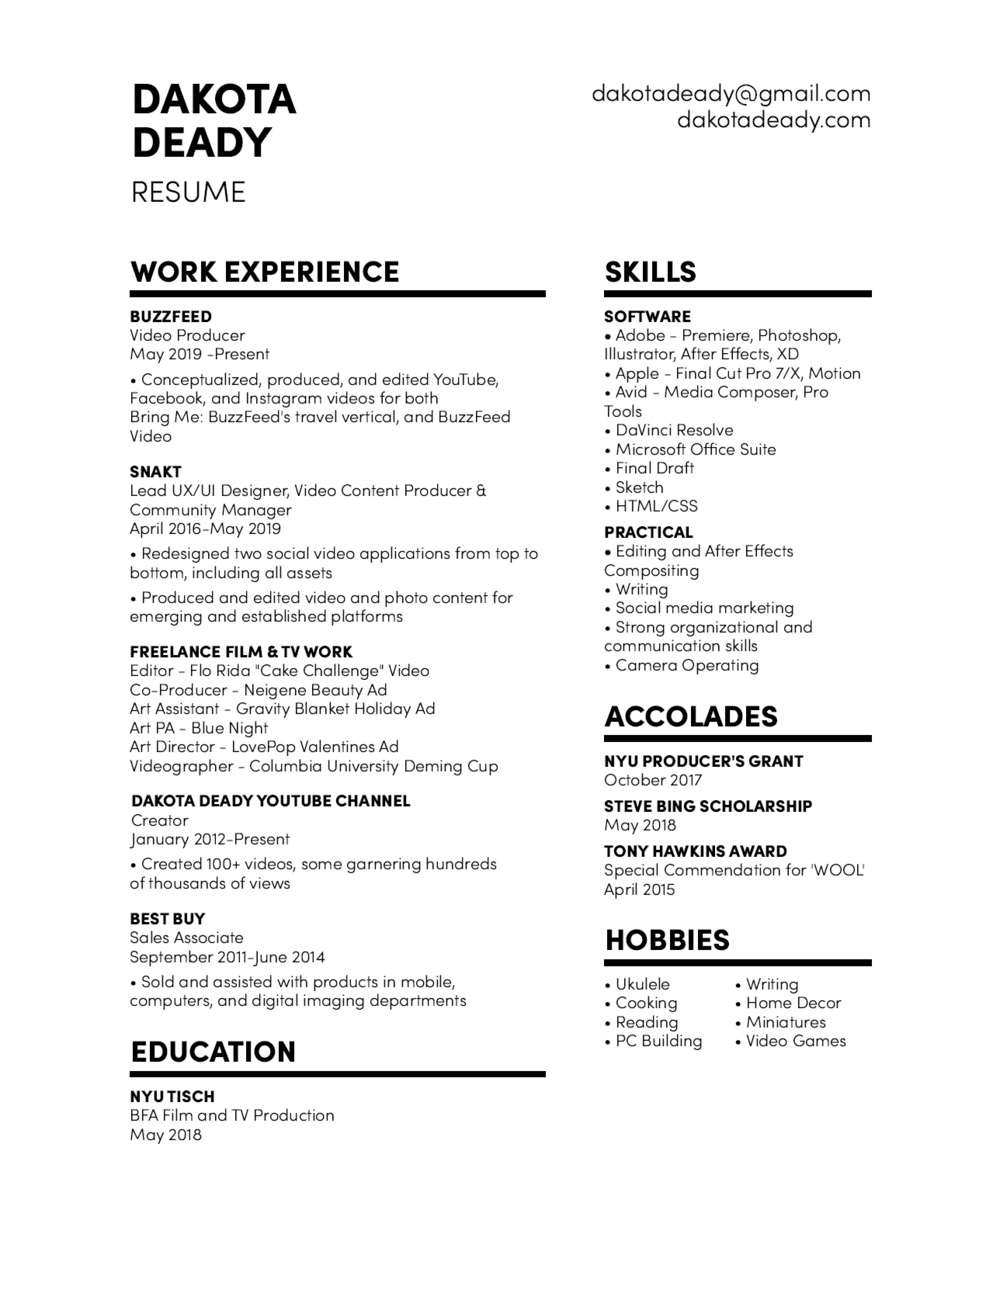 dakota's resume